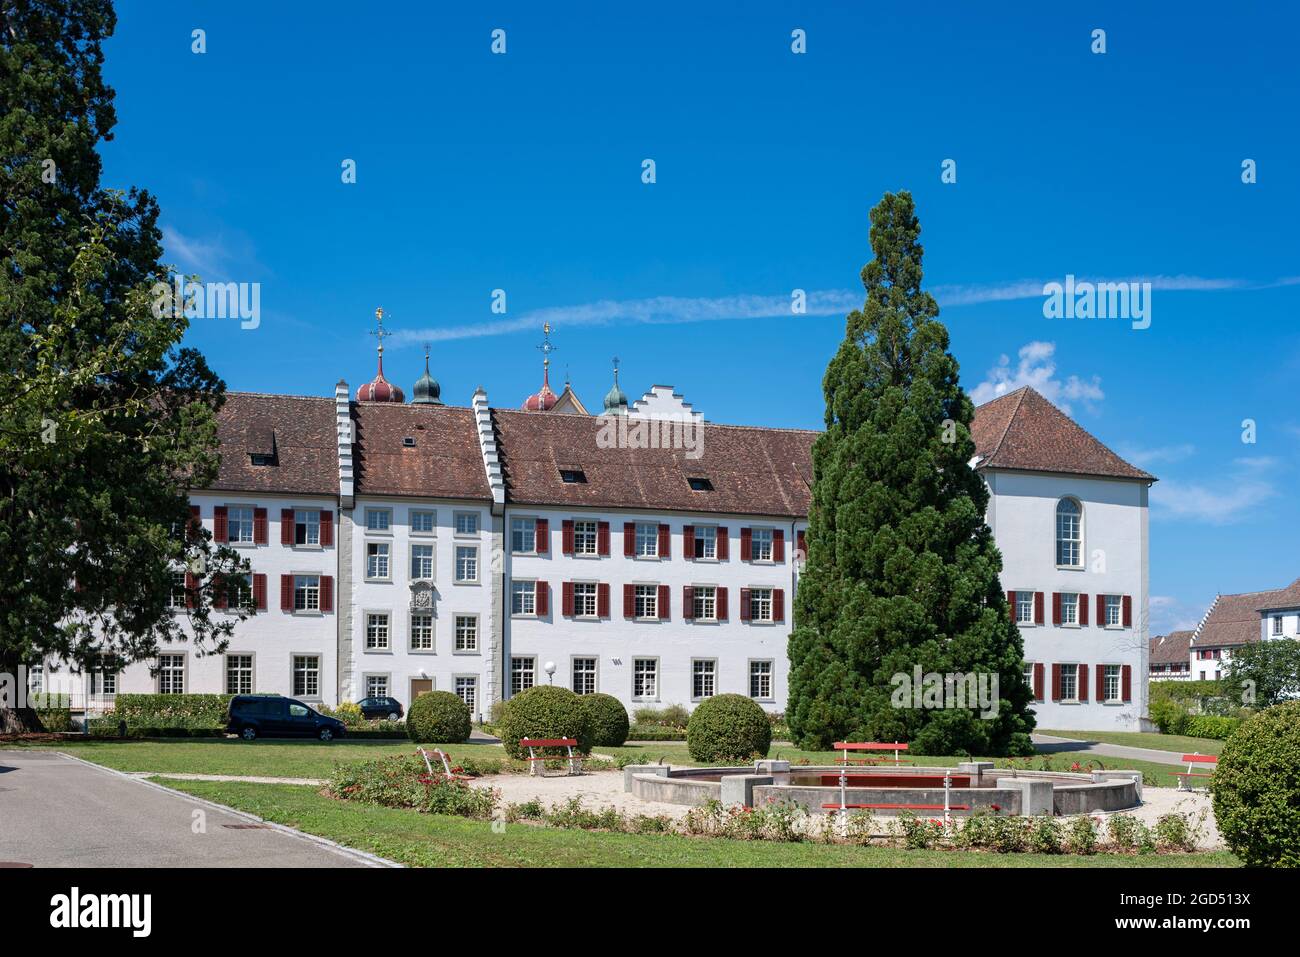 Géographie / voyage, Suisse, Zurich, Rheinau, Abbaye de Rheinau, INFO-AUTORISATION-DROITS-SUPPLÉMENTAIRES-NON-DISPONIBLE Banque D'Images